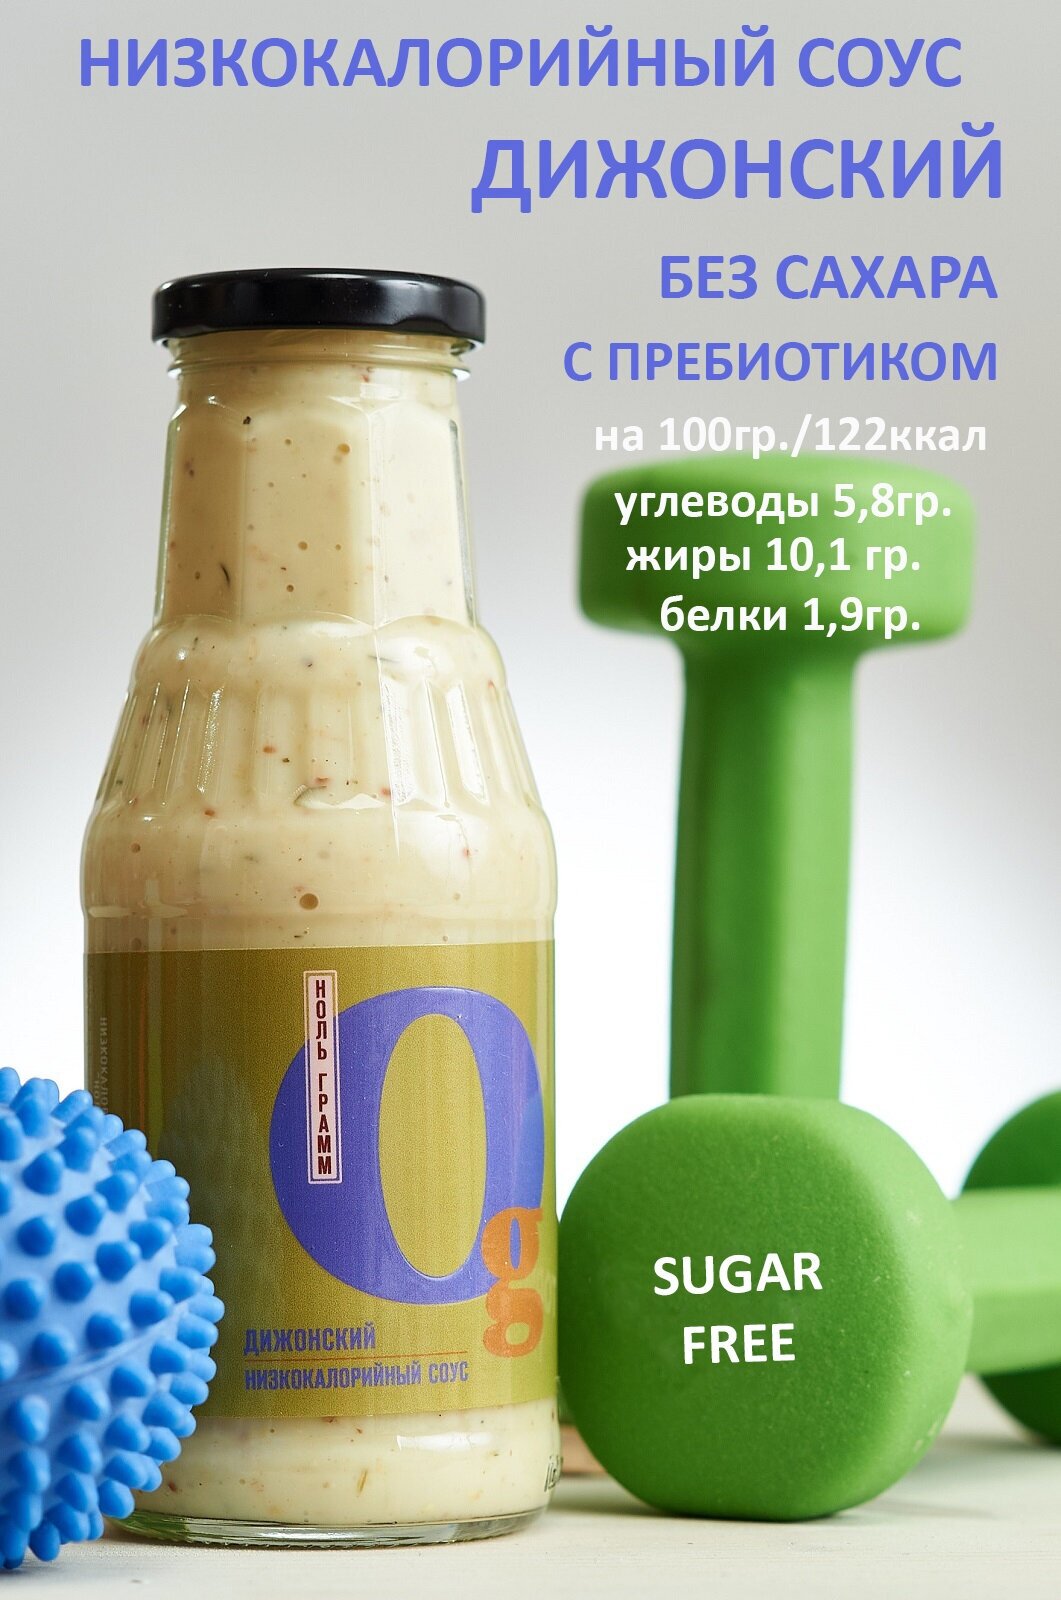 Низкокалорийный zero соус без сахара с пребиотиком "Ноль грамм" Дижонский, 330г